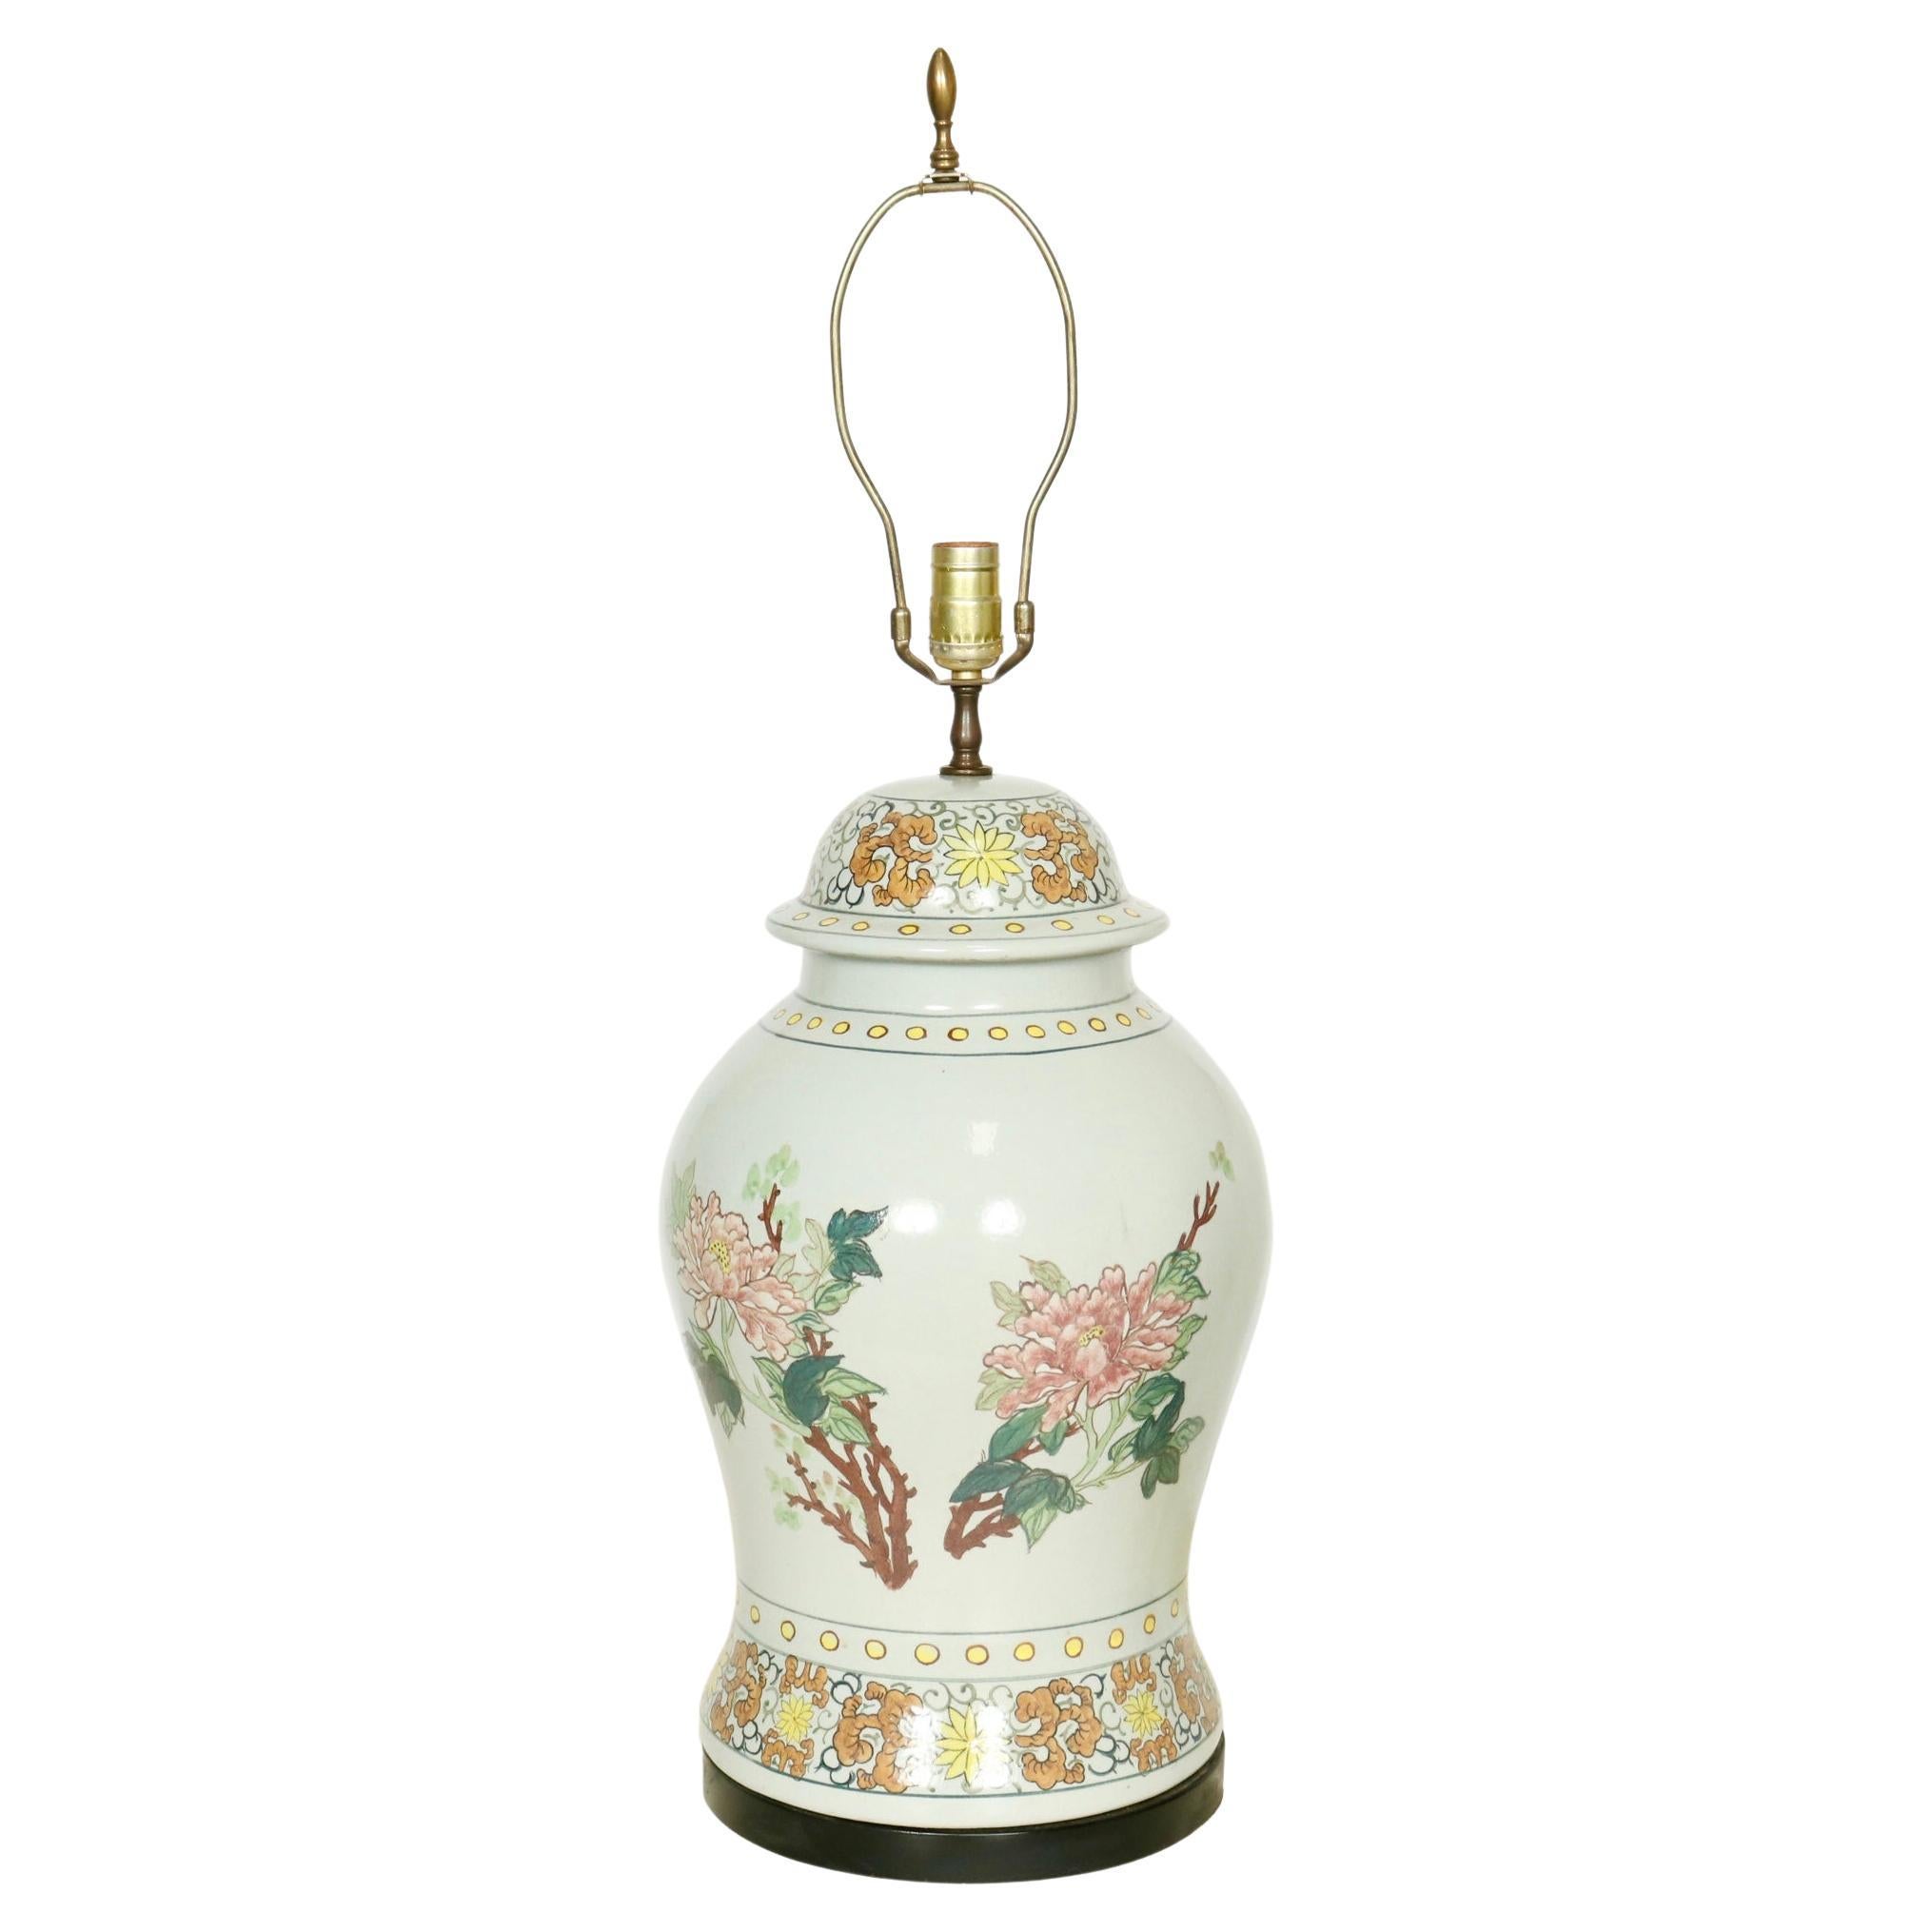 Vintage Chinese Ginger Jar Porcelain Table Lamp